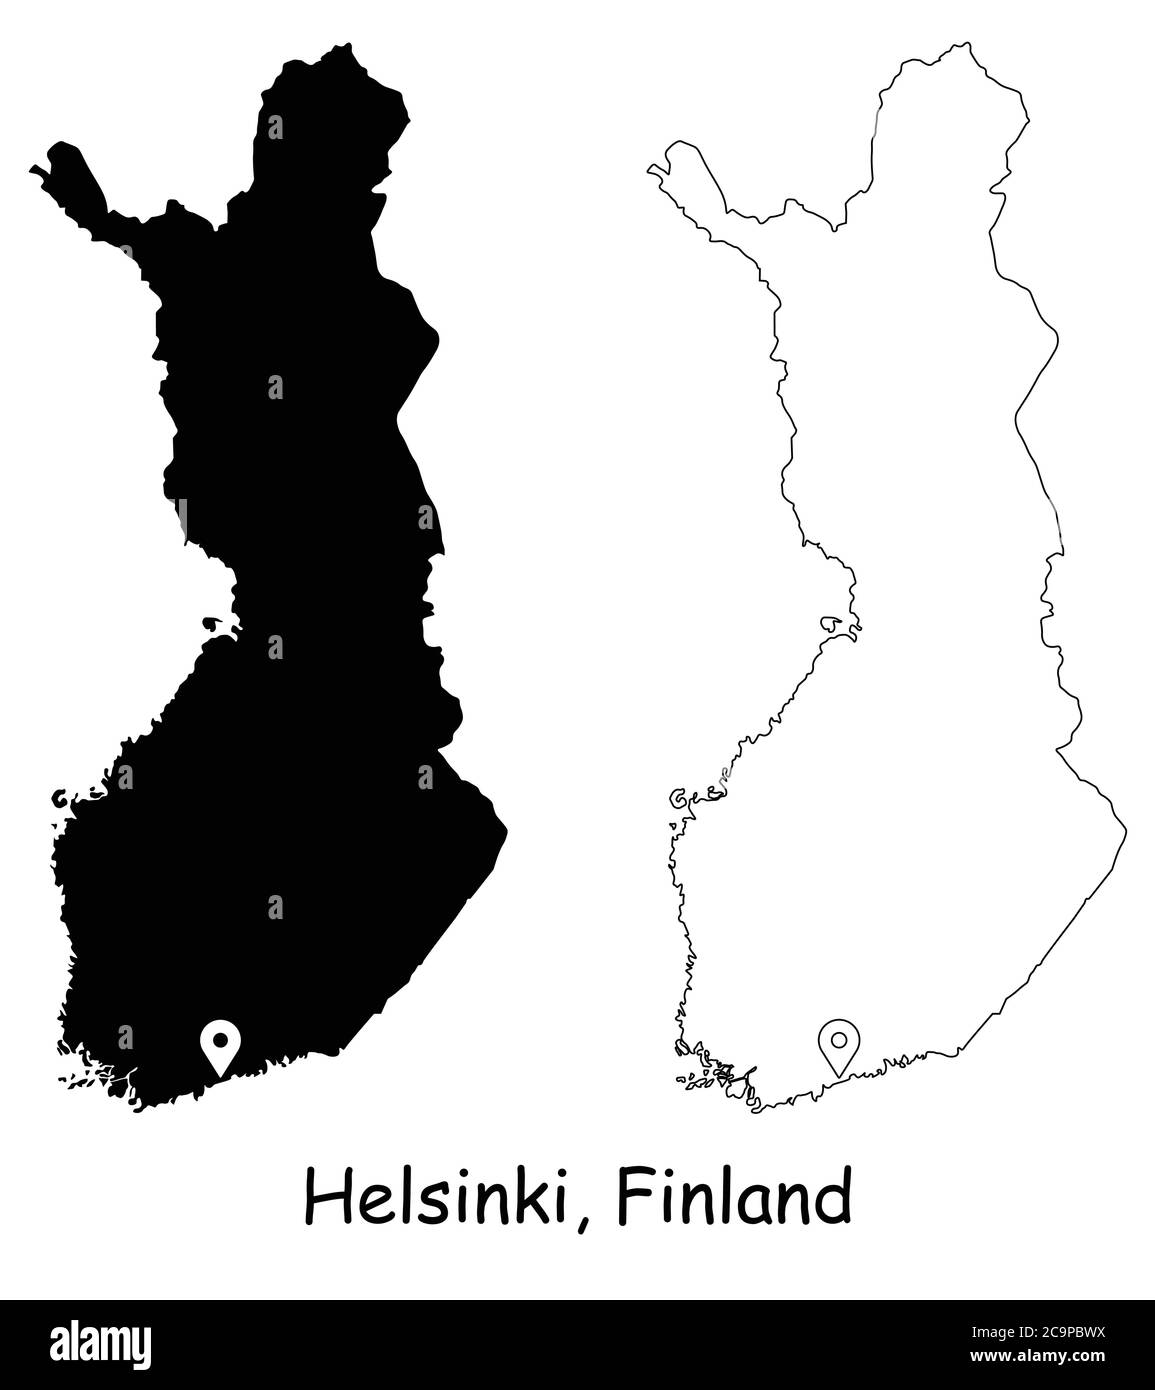 Helsinki Finnland. Detaillierte Landkarte mit Lage Pin auf Hauptstadt. Schwarze Silhouette und Umrisskarten isoliert auf weißem Hintergrund. EPS-Vektor Stock Vektor